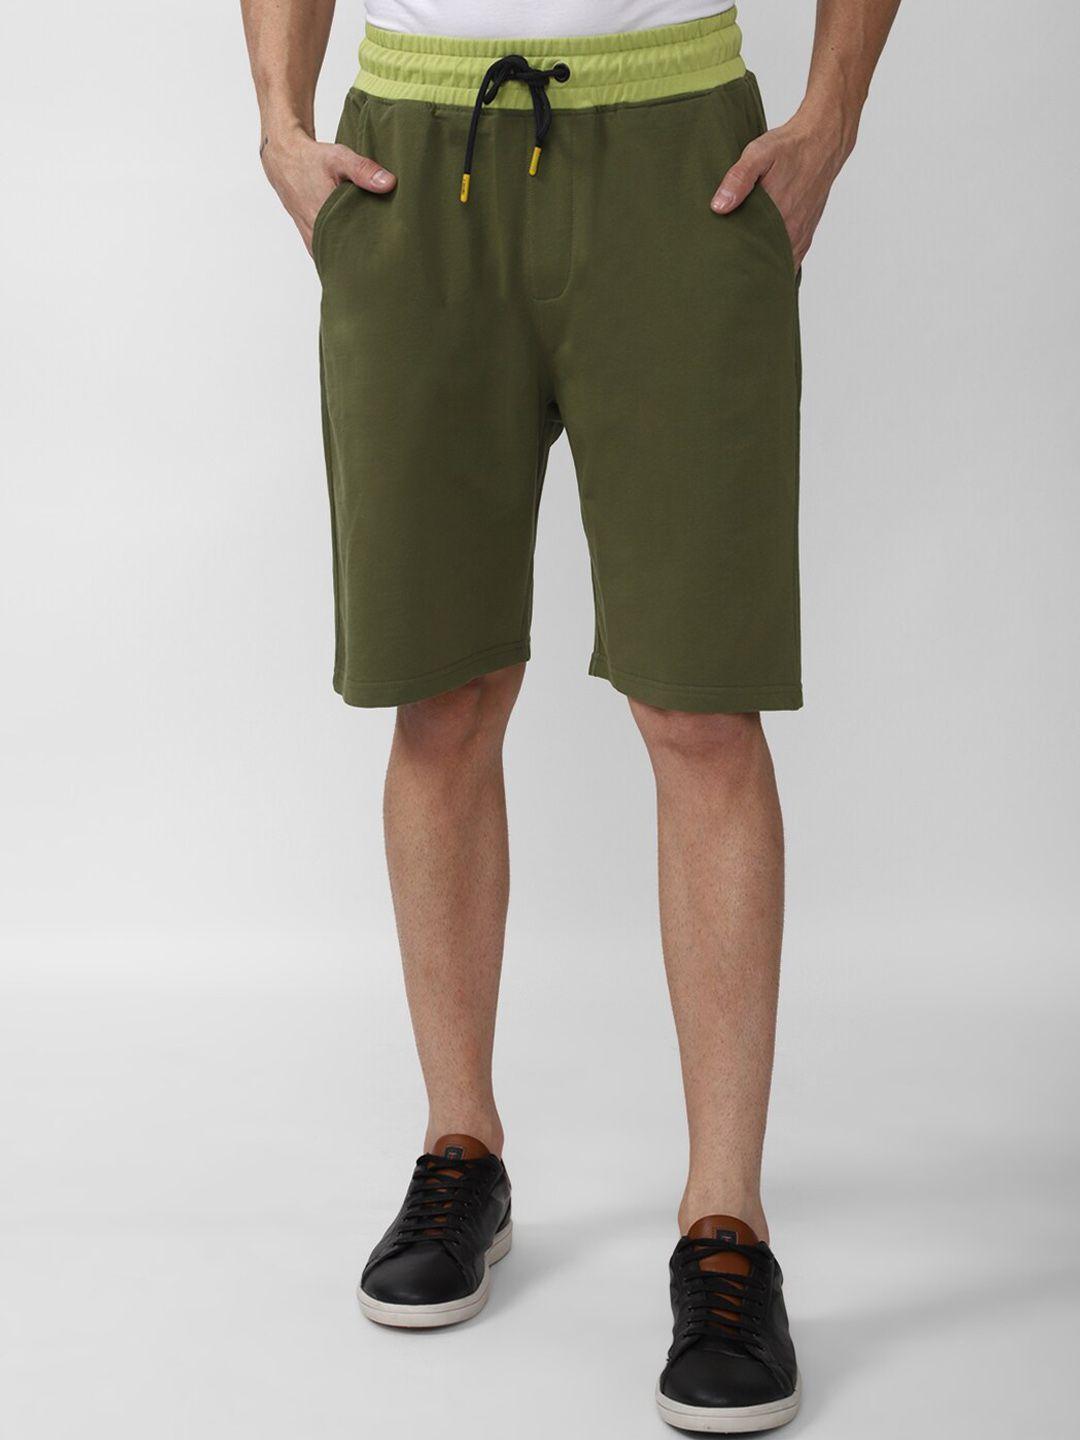 forever 21 men olive green shorts